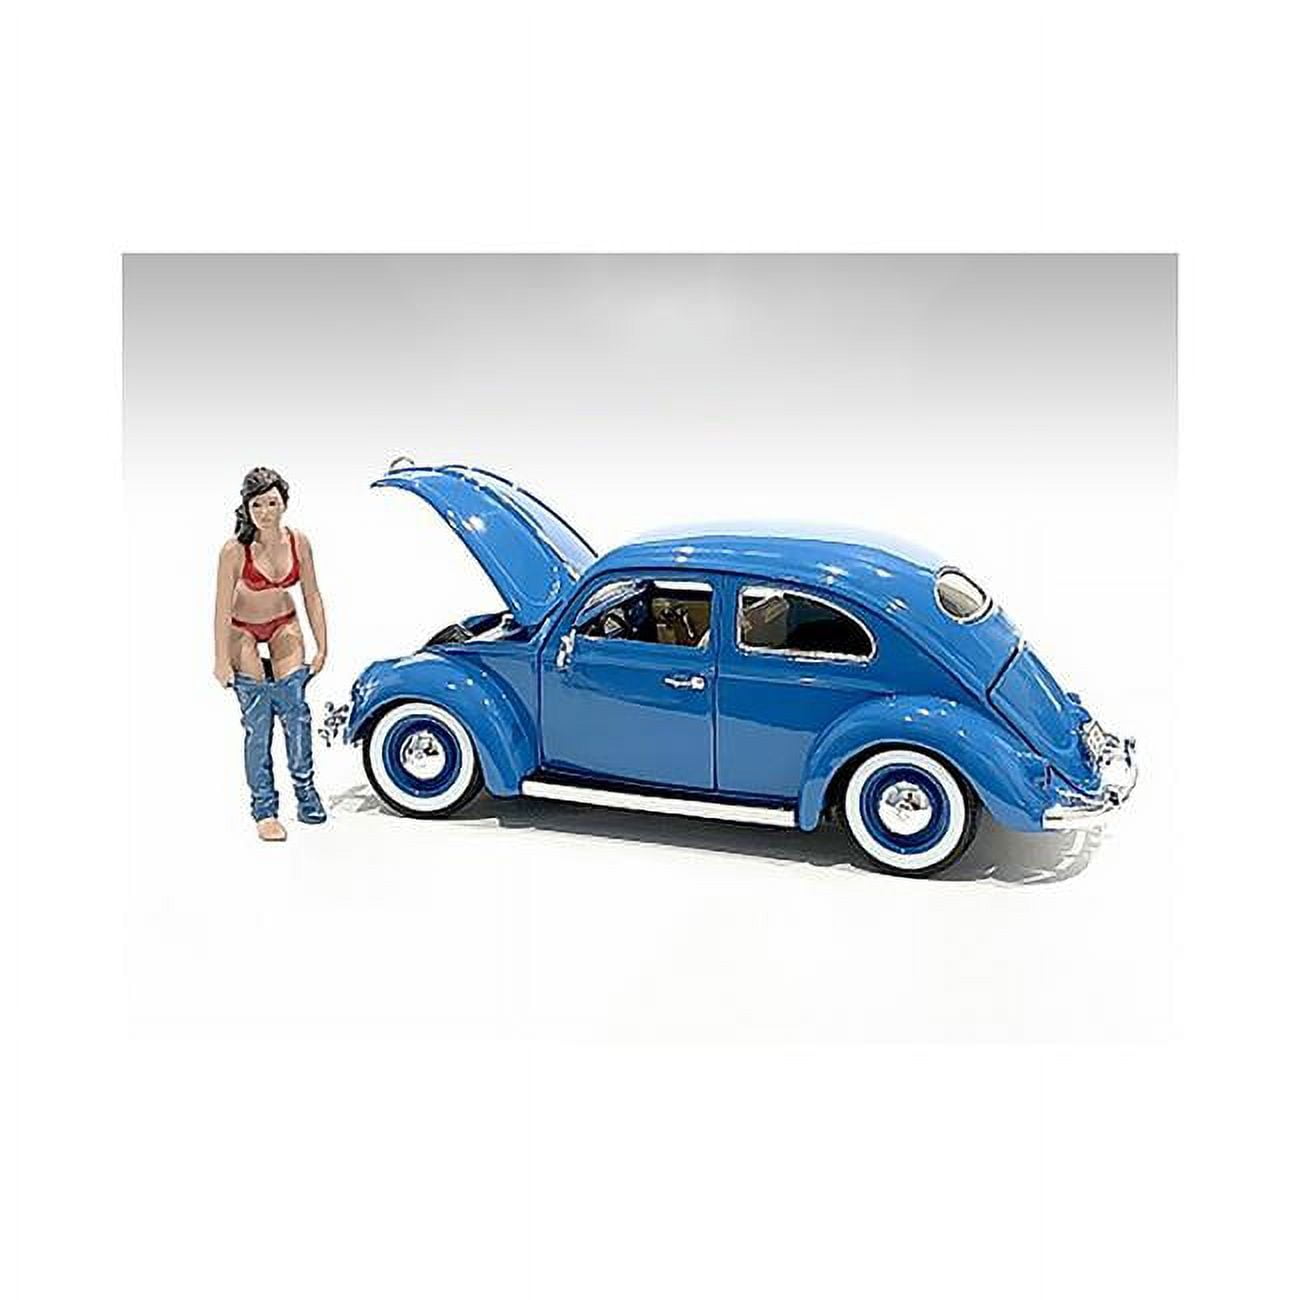 Picture of American Diorama 76414 3 in. 1-24 Scale Beach Girl Gina Model Figurine